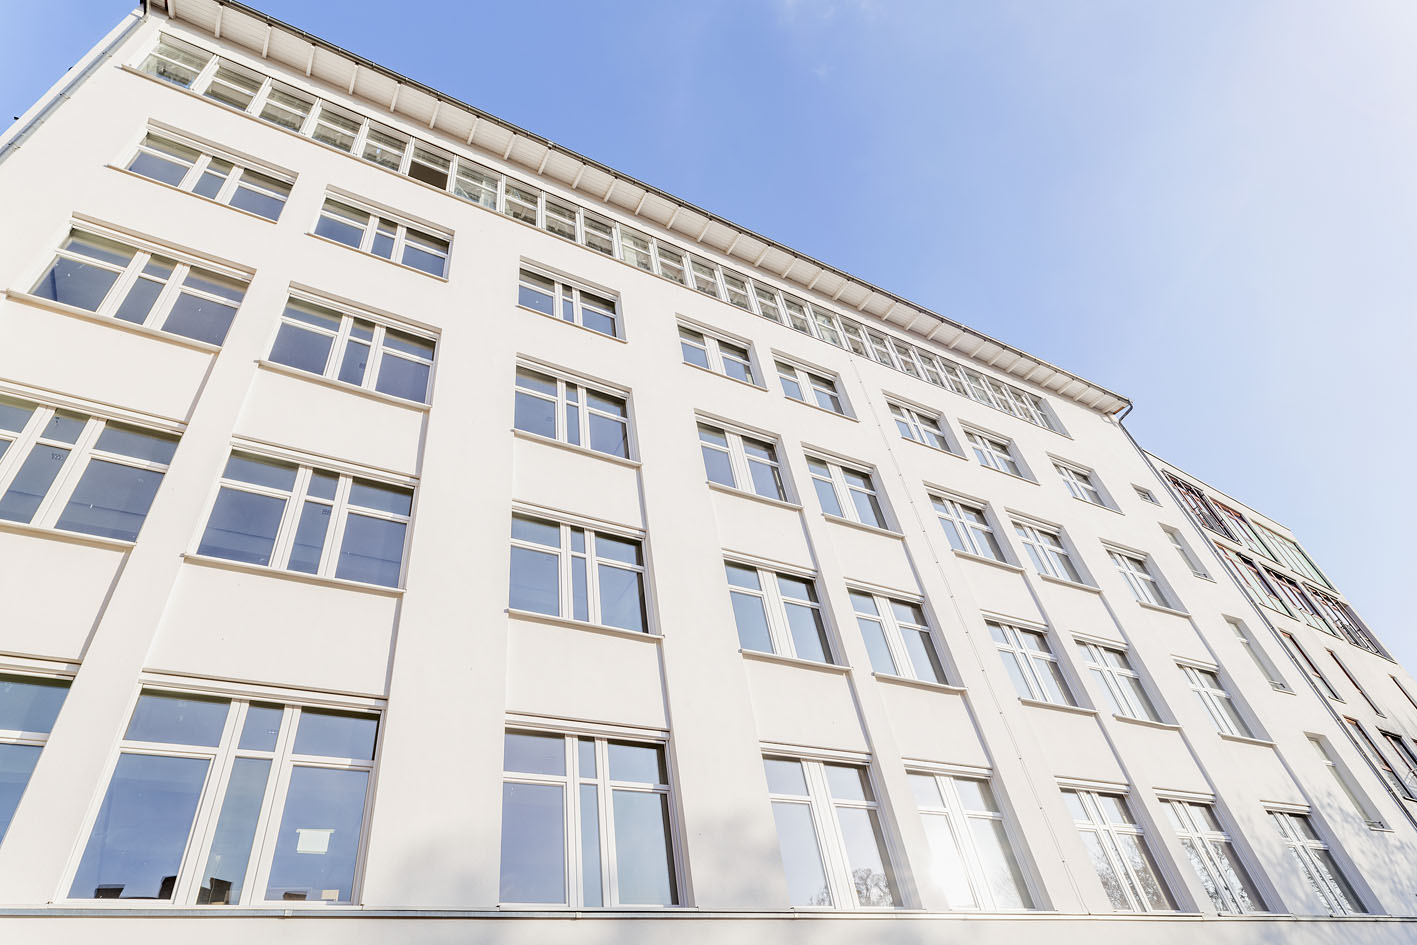 Klarna's new office in Berlin